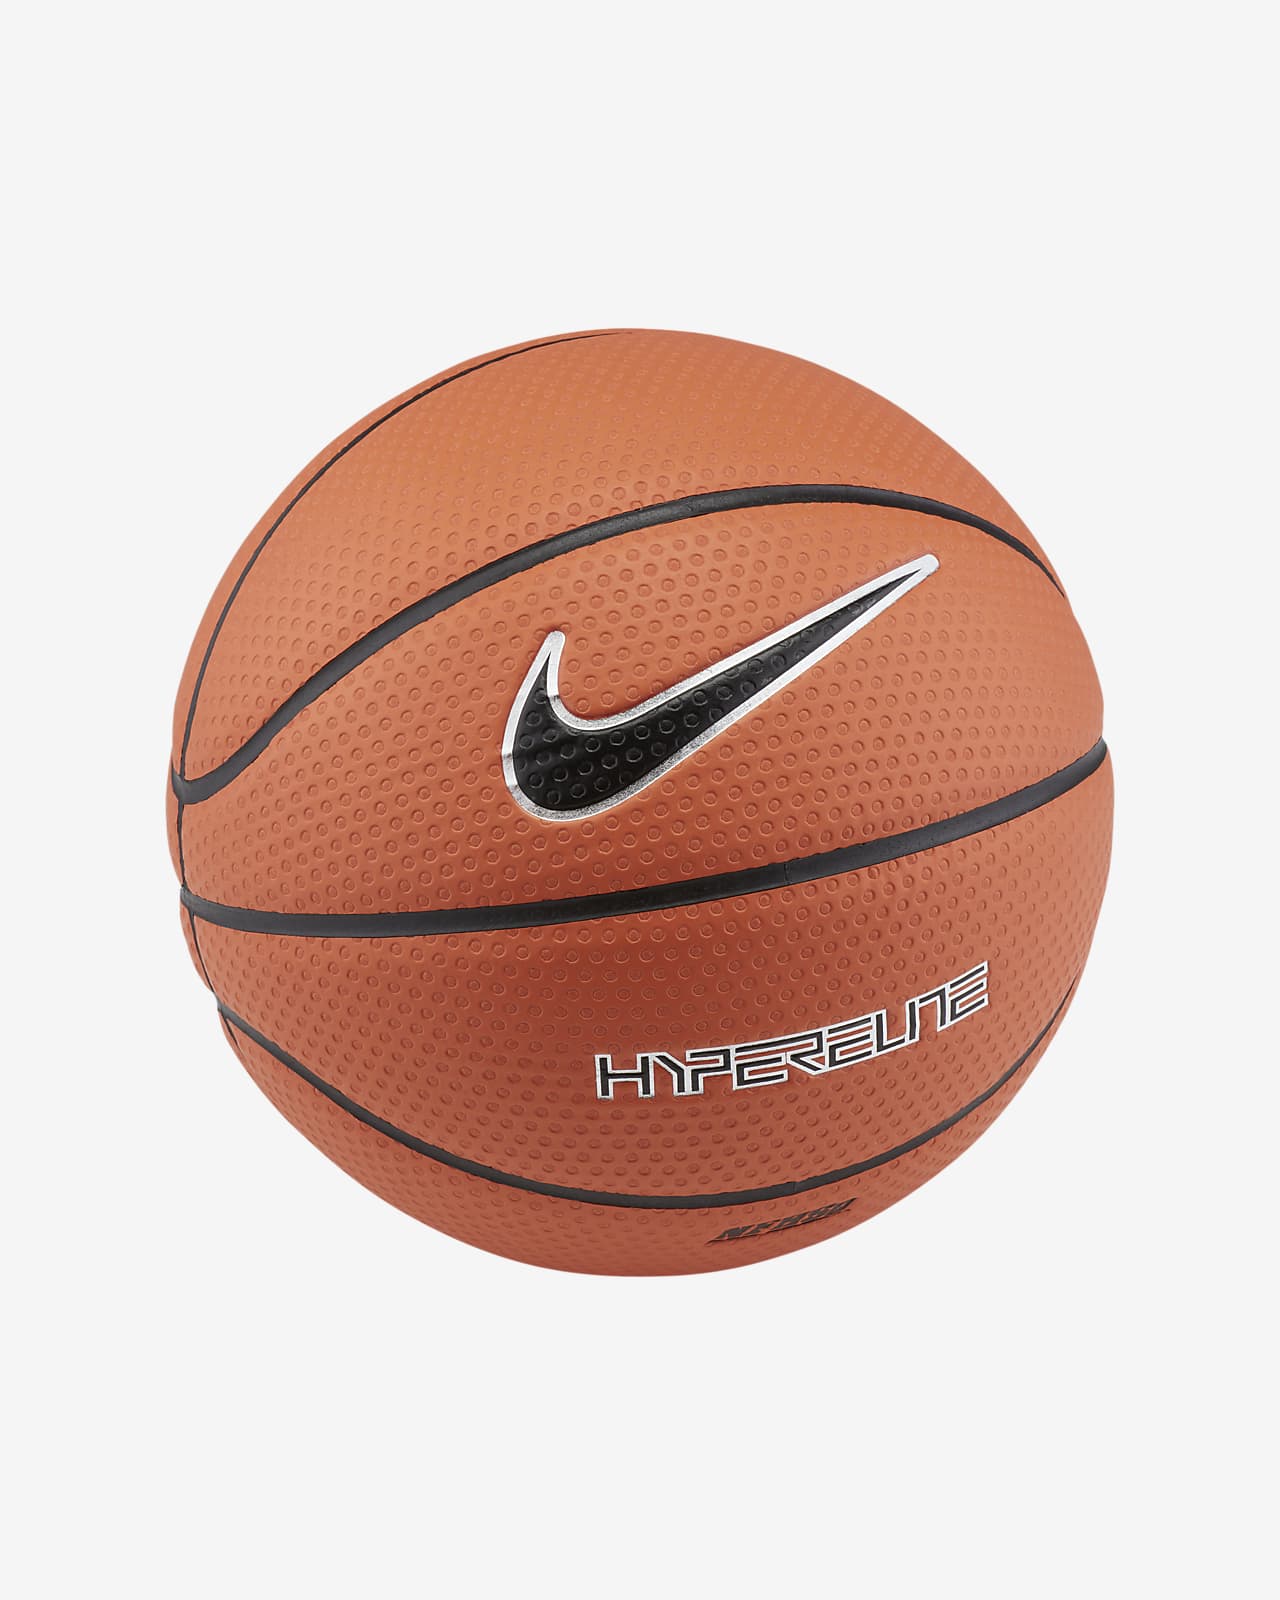 Nike Hyper Basketball (Size 6 and Nike JP